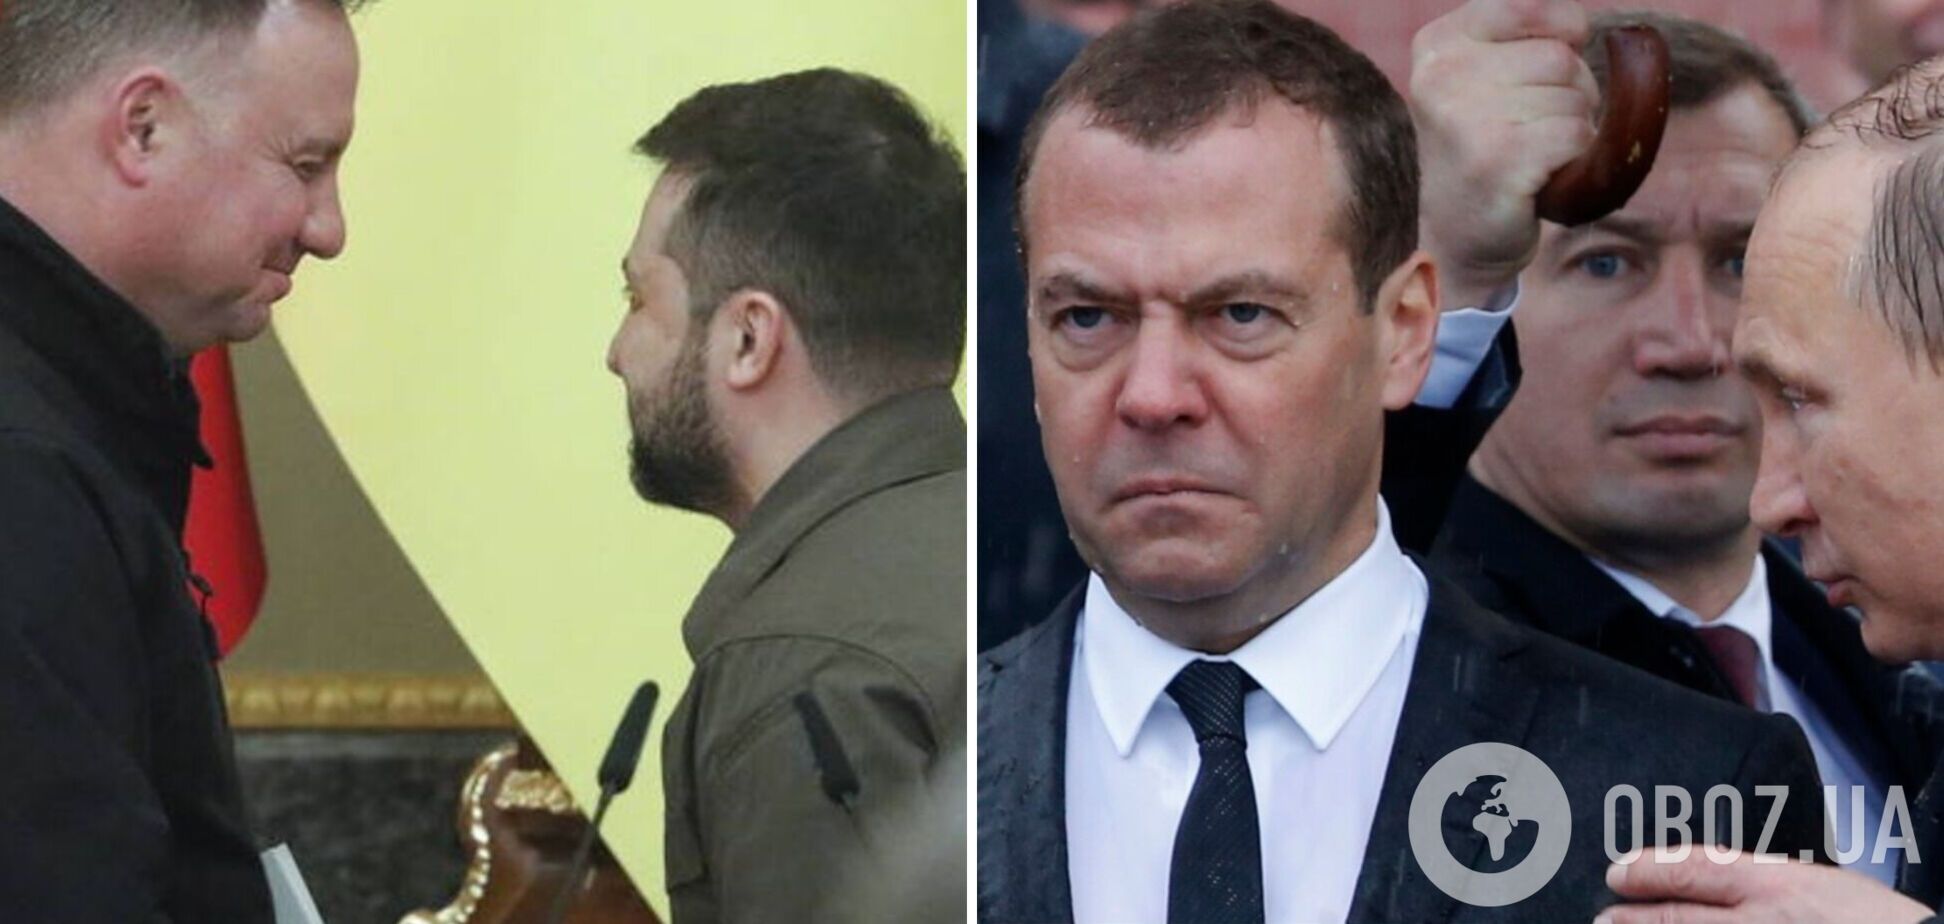 Медведев выдал, что Польша объявила раздел Украины: Подоляк пошутил про 'дух Жириновского'